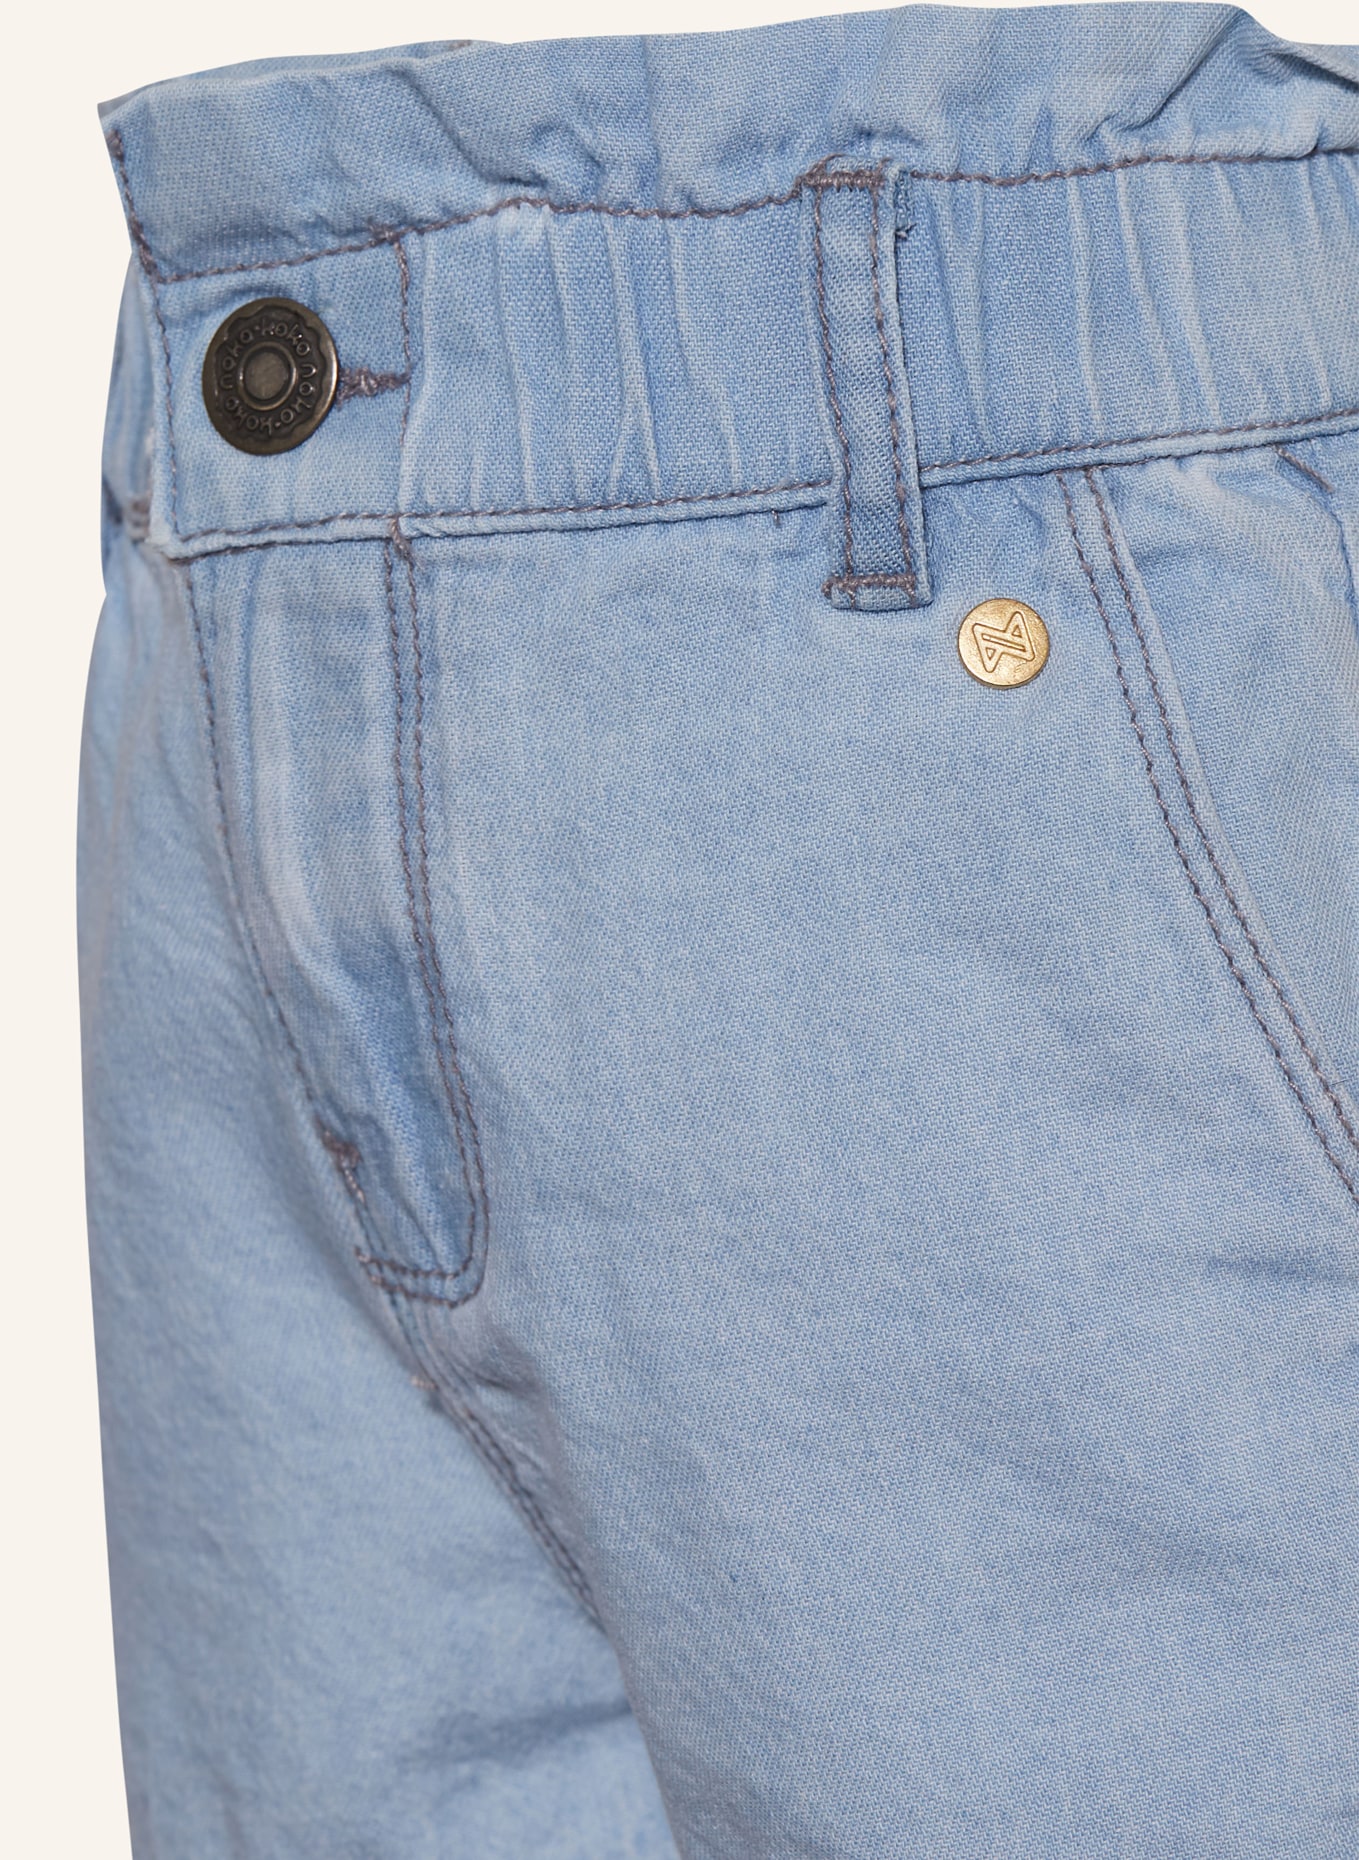 Koko Noko Jeansshorts mit Rüschen, Farbe: blue jeans (Bild 3)